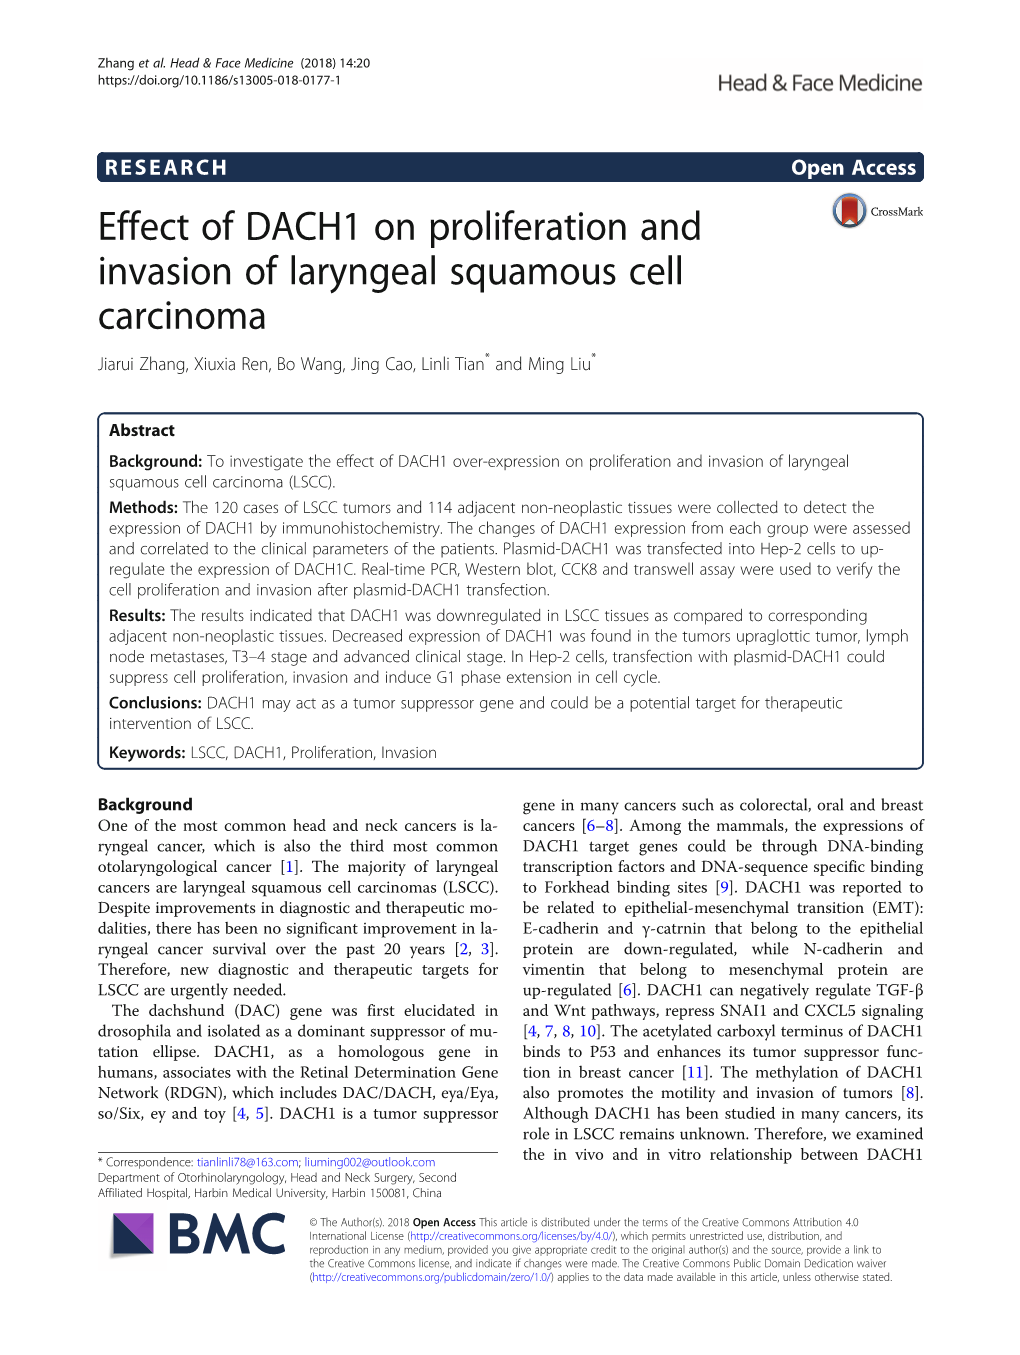 Effect of DACH1 on Proliferation and Invasion of Laryngeal Squamous Cell Carcinoma Jiarui Zhang, Xiuxia Ren, Bo Wang, Jing Cao, Linli Tian* and Ming Liu*